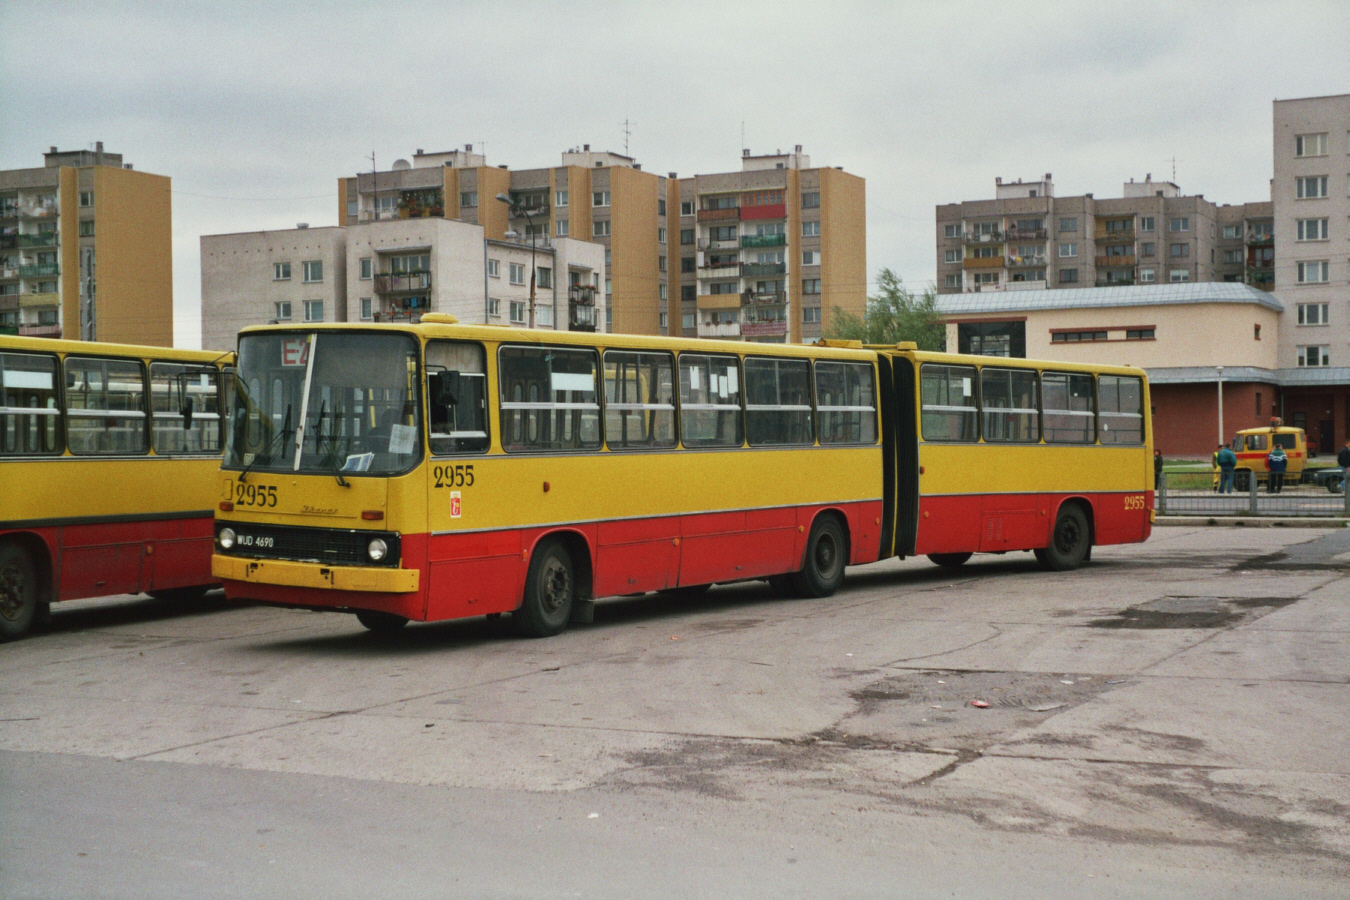 2955
Ikarus 280, produkcja 1985, NG 1991 (Lublin), kasacja 1998.
Wóz kilka miesięcy wcześniej przeszedł tzw. estetykę w zakładzie T-4 na Włościańskiej.
Remont polegał na pokryciu nowym lakierem karoserii, wnętrze nie było remontowane.
Przy okazji wóz przemalowano w nowe żółto-czerwono barwy, a na macierzystej zajezdni szybko przemalowano zderzaki na żółto jak to Chełmska lubiła robić w wozach w nowym malowaniu.

Linia E-2 na nieistniejącej już pętli Wrocławska-Kościół (d. Bemowo-Lotnisko).

Foto: P.B. Jezierski
Słowa kluczowe: 2955